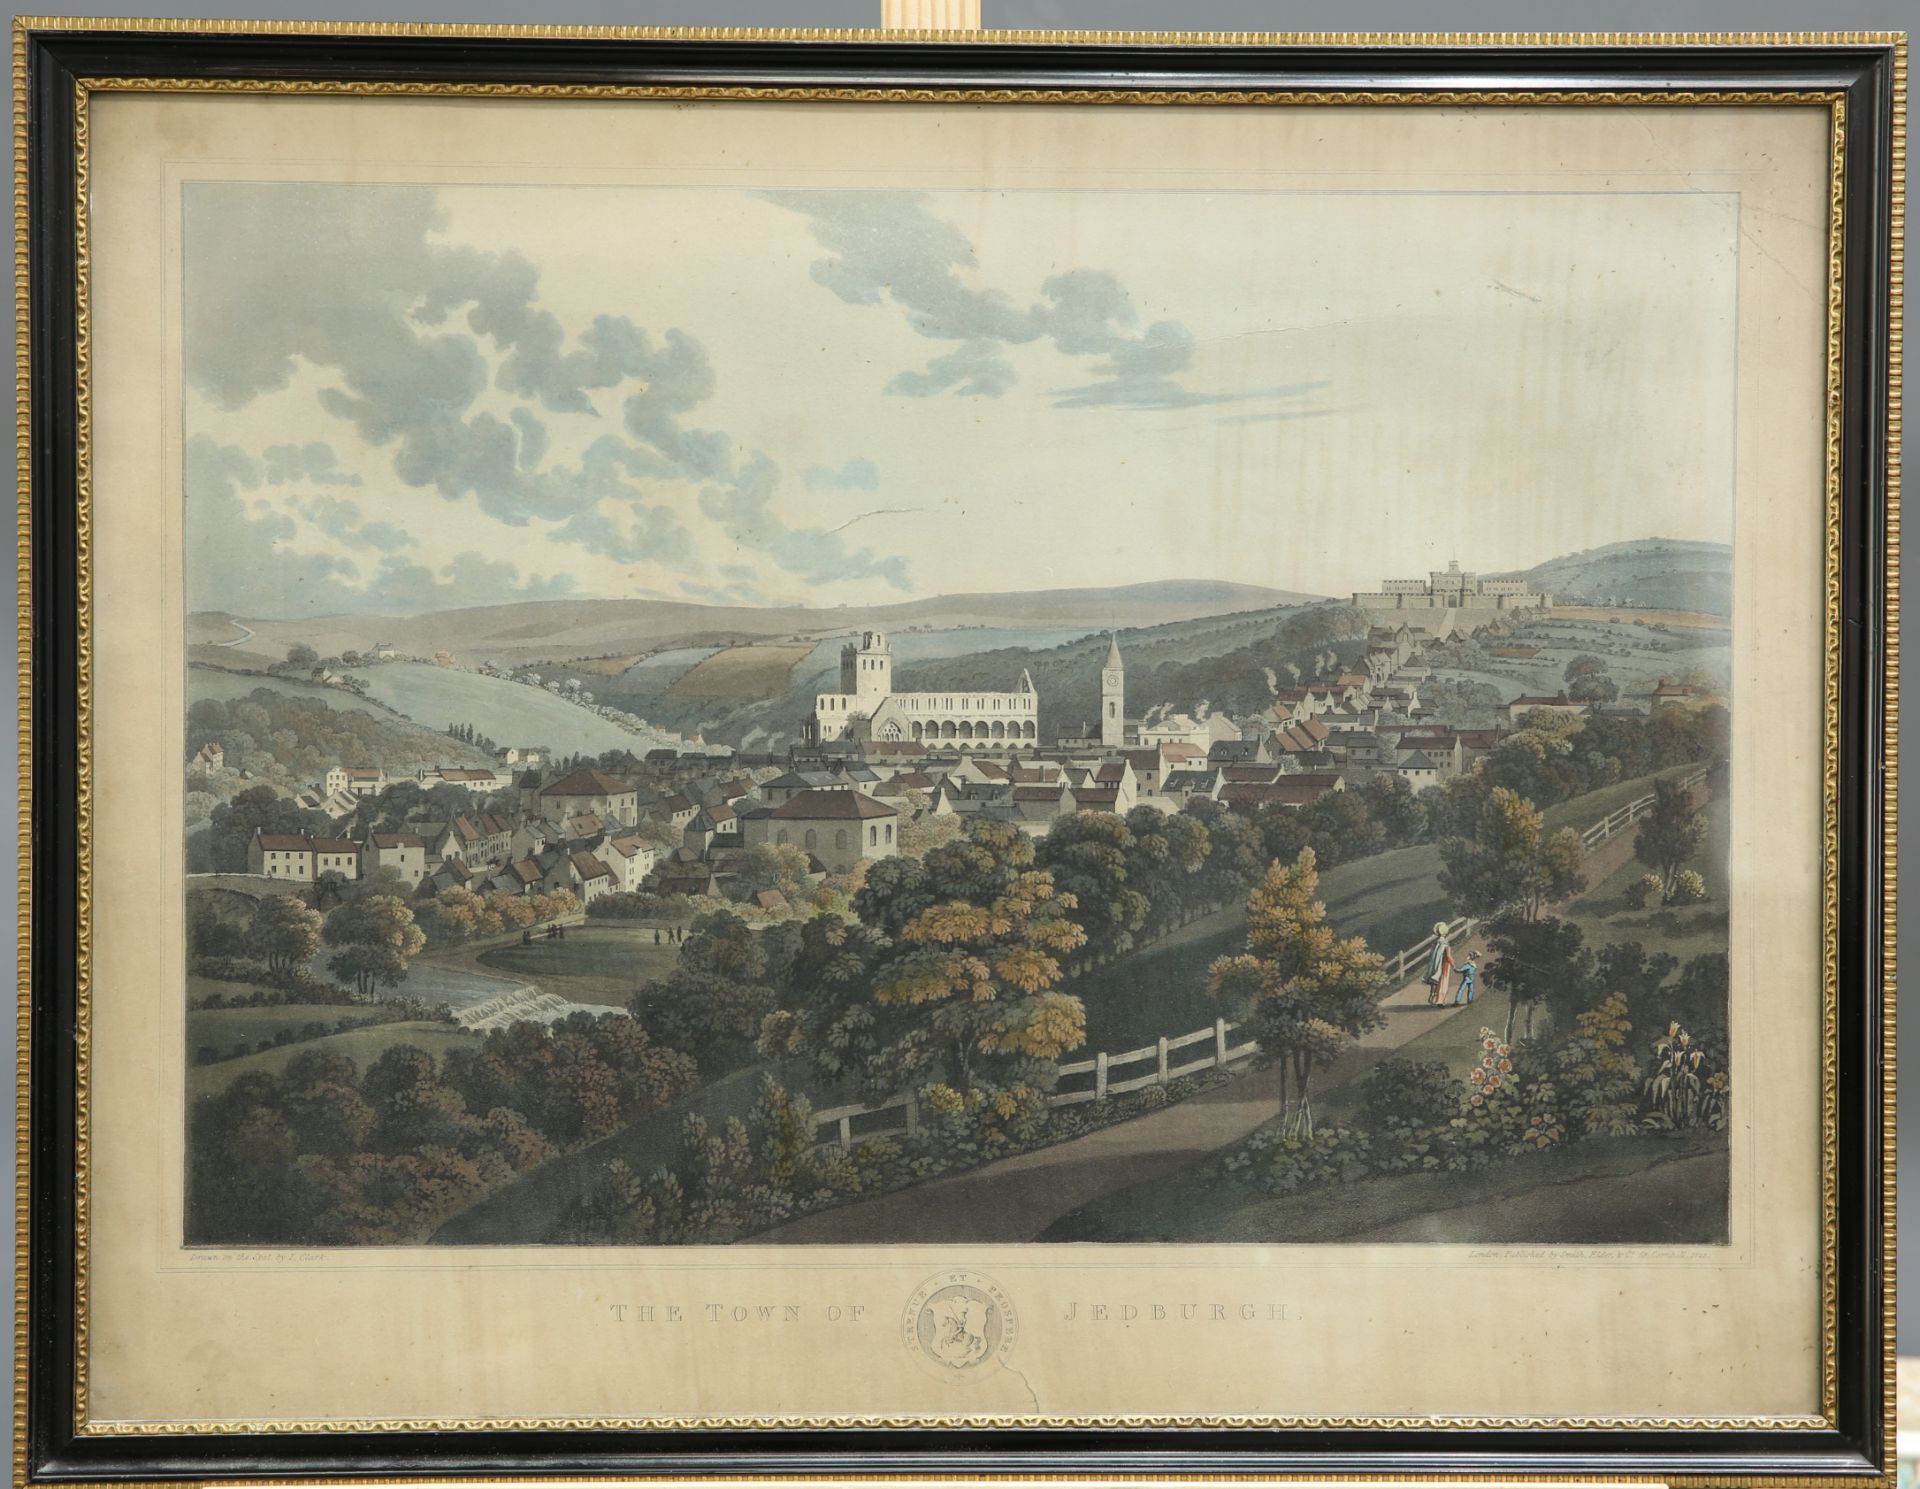 AFTER JOHN HEAVISIDE CLARK (1771-1863), "THE TOWN OF JEDBURGH"